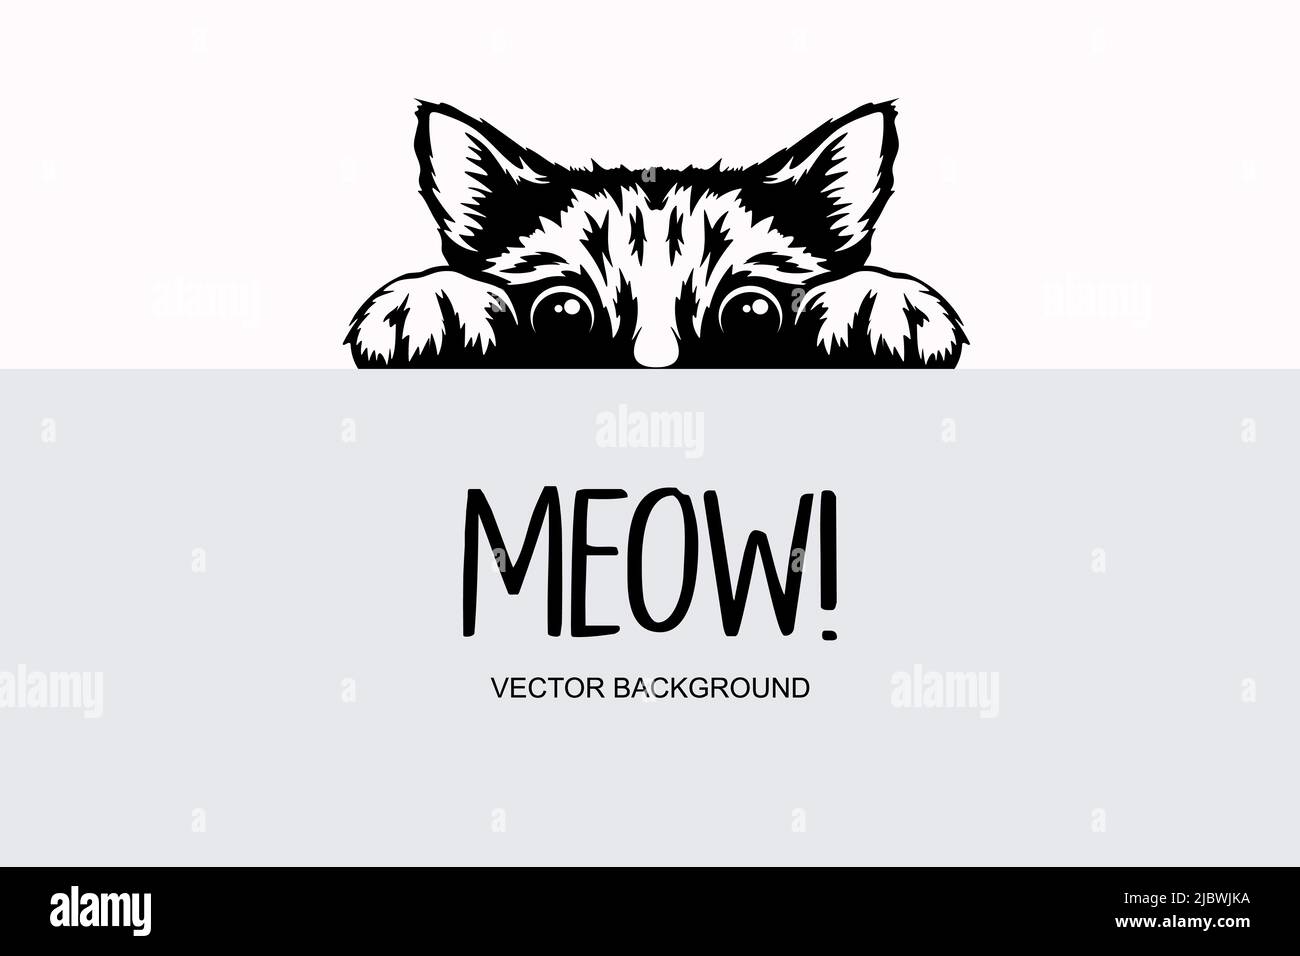 Vektor Monochrom Handschublade Schwarz, Weiß Versteckt Peeking Kitten. Kätzchen-Kopf mit aufgepaarten Pfoten, die über ein blank weißes Schild, Poster, Karte, Banner aufsteigen. Haustier Stock Vektor